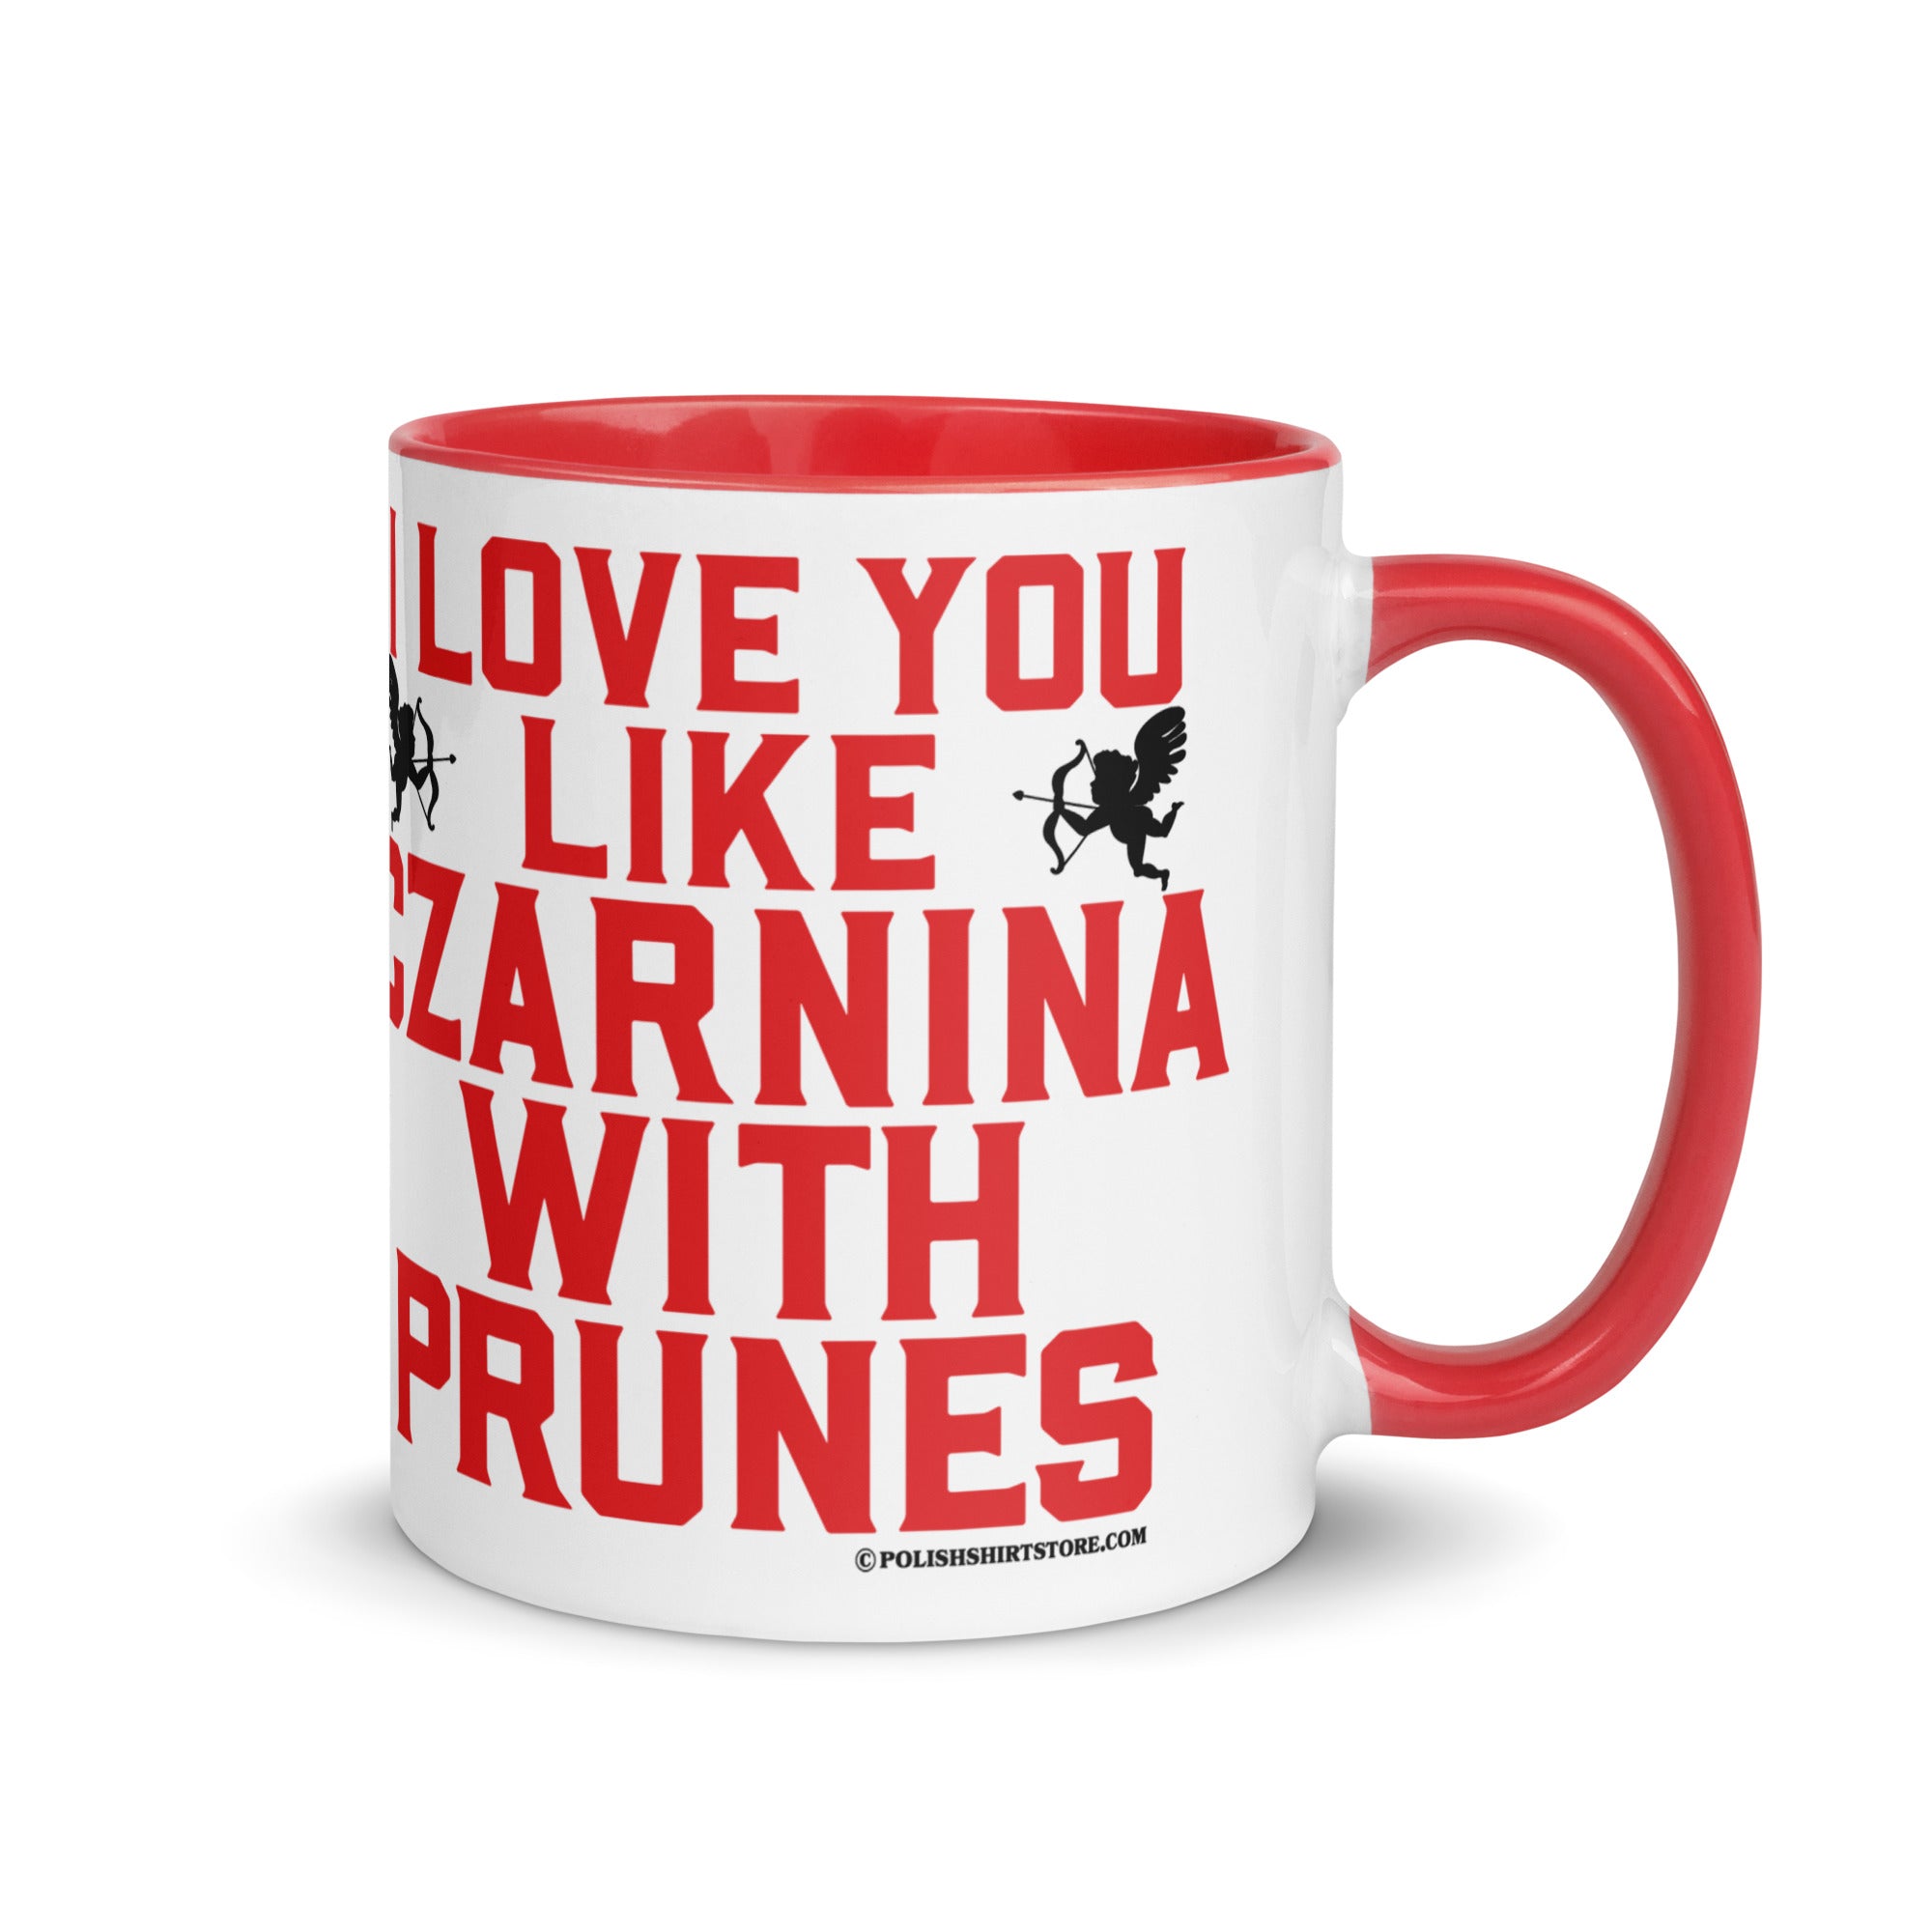 I Love You Like Czarnina With Prunes Coffee Mug with Color Inside  Polish Shirt Store Red 11 oz 